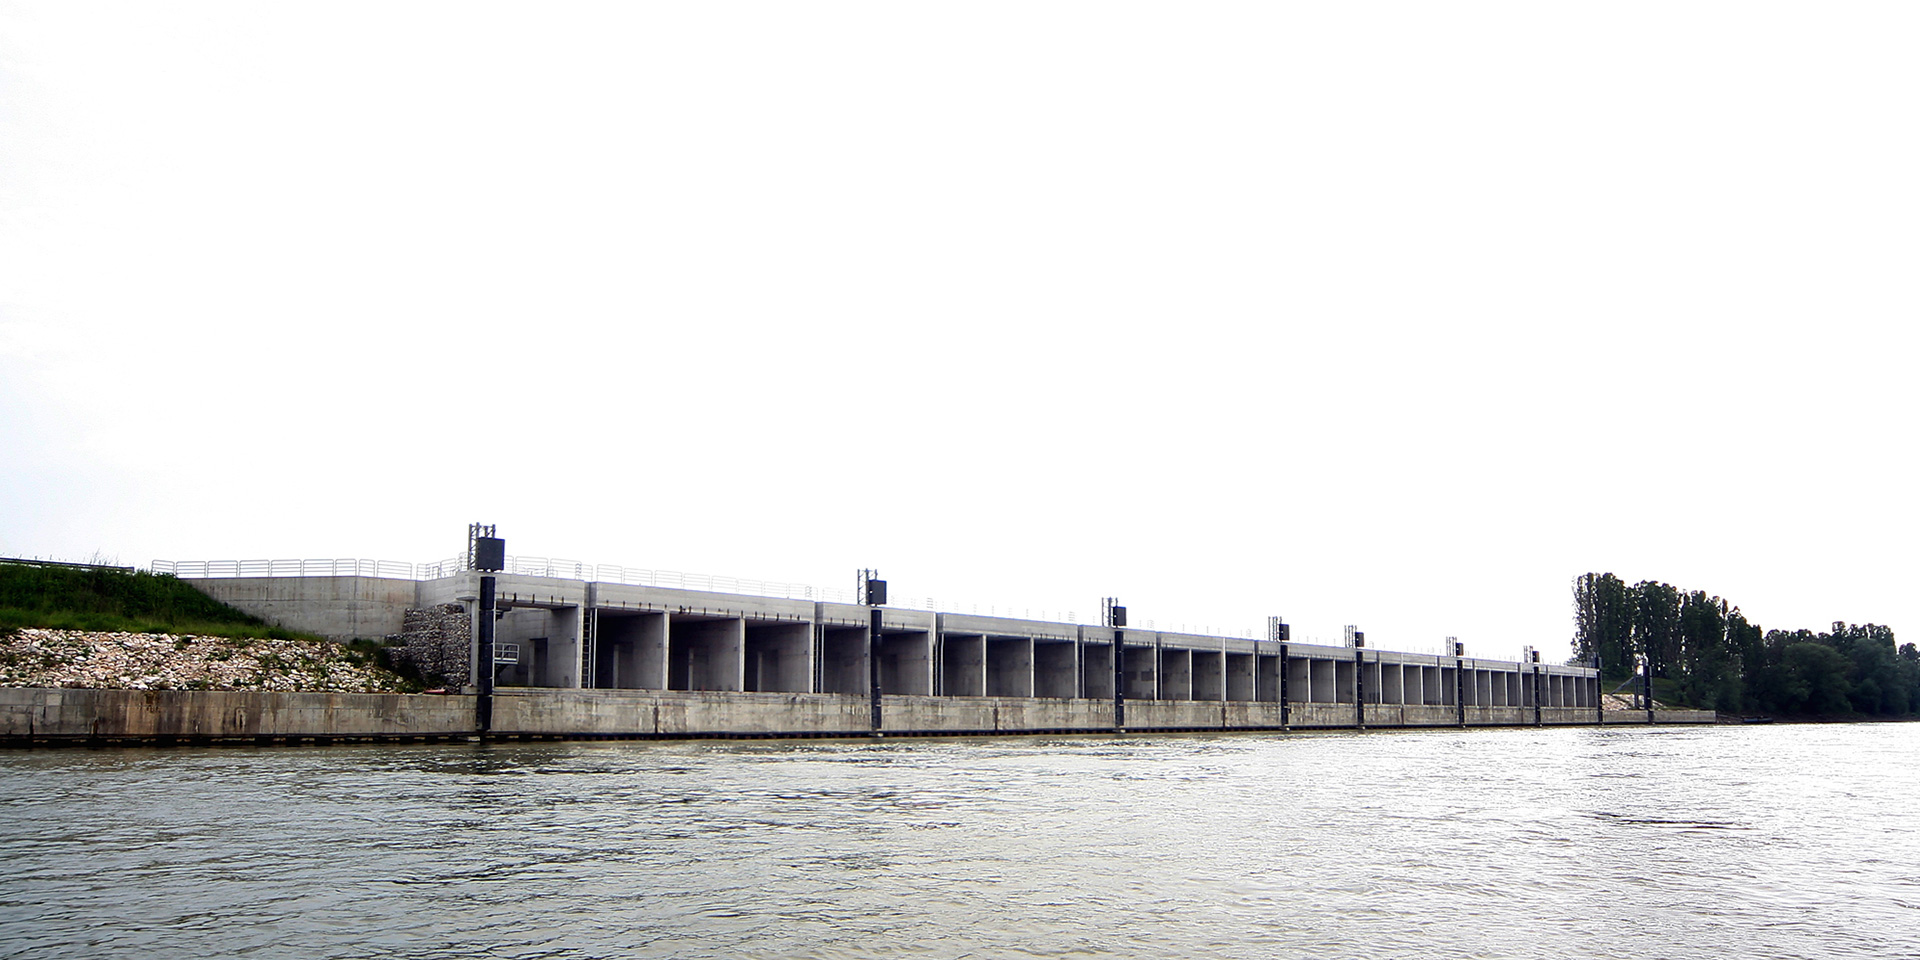 TEC – Terminal idroviario dell’Emilia Centrale, Binini Partners, Società di architettura e ingegneria